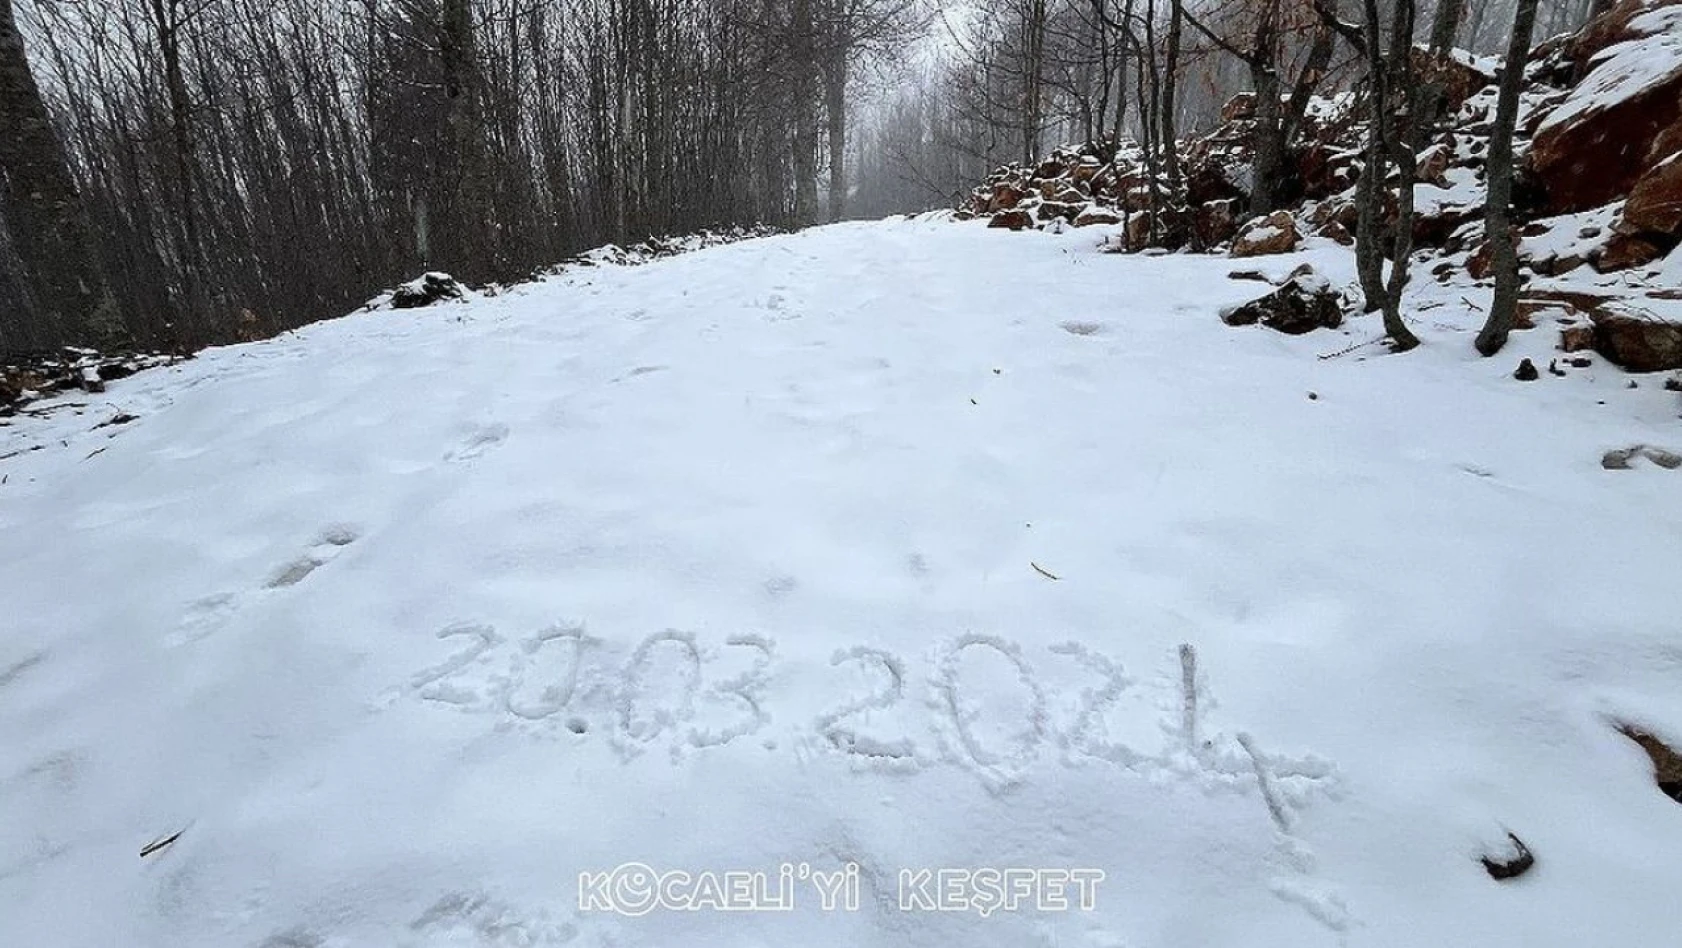 Kocaeli'nin yüksek kesimlerinde kar yağıyor